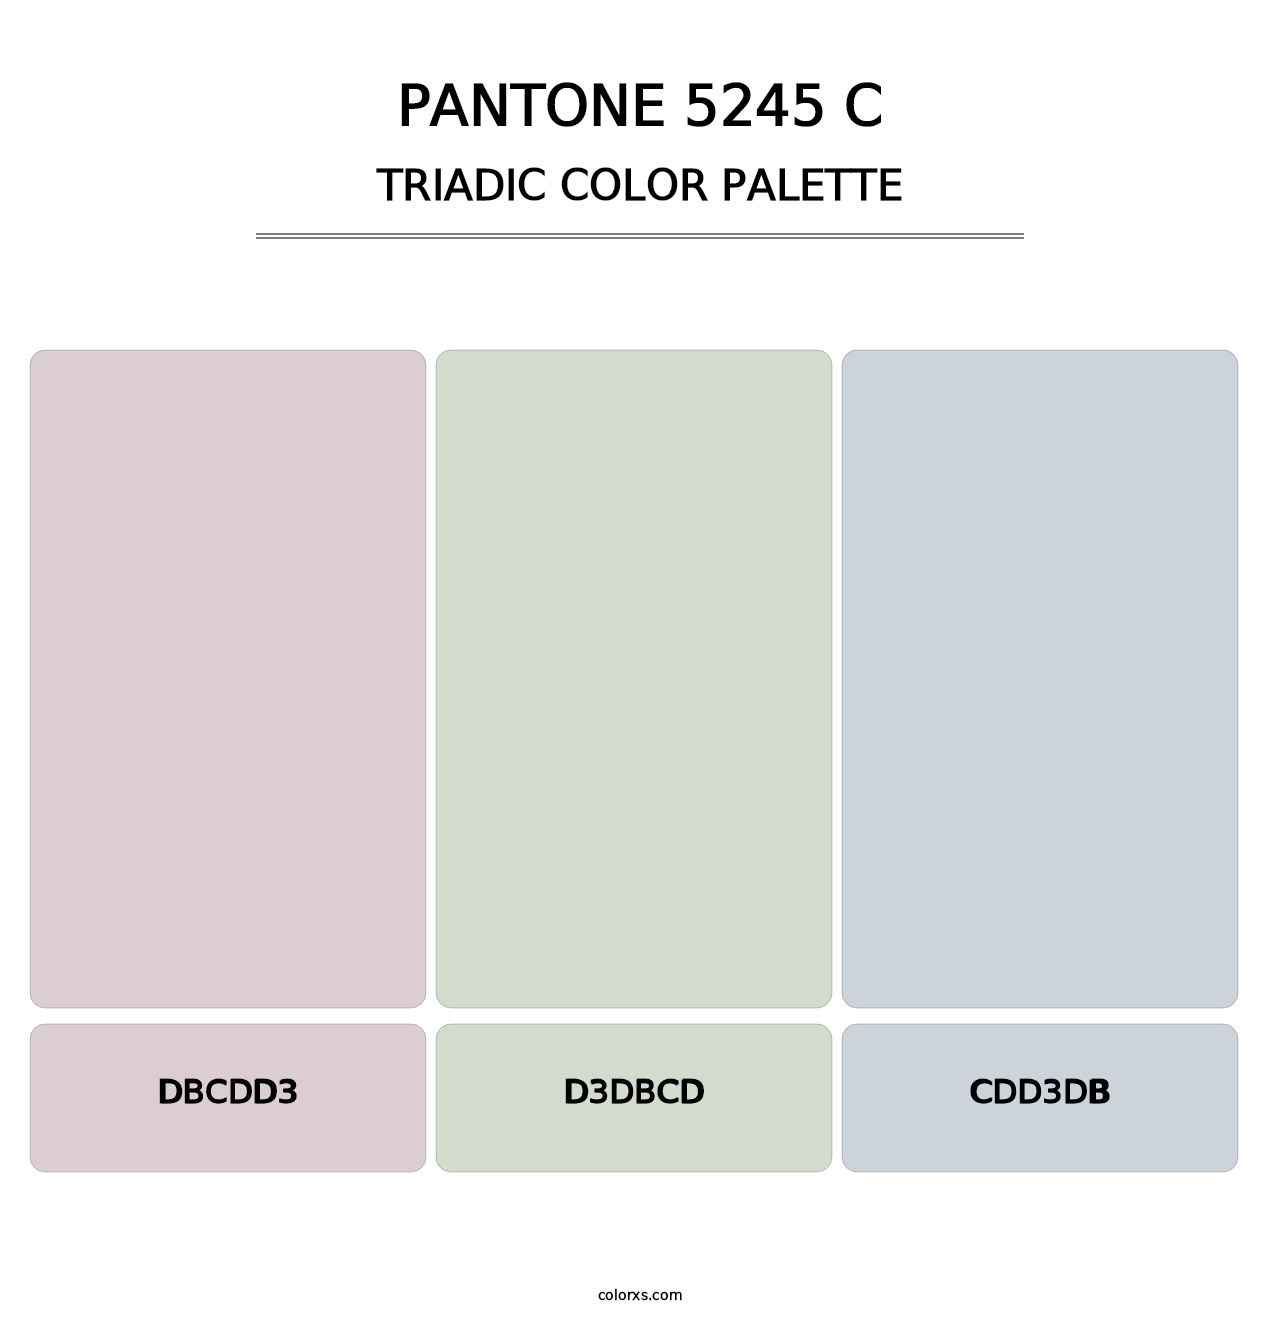 PANTONE 5245 C - Triadic Color Palette